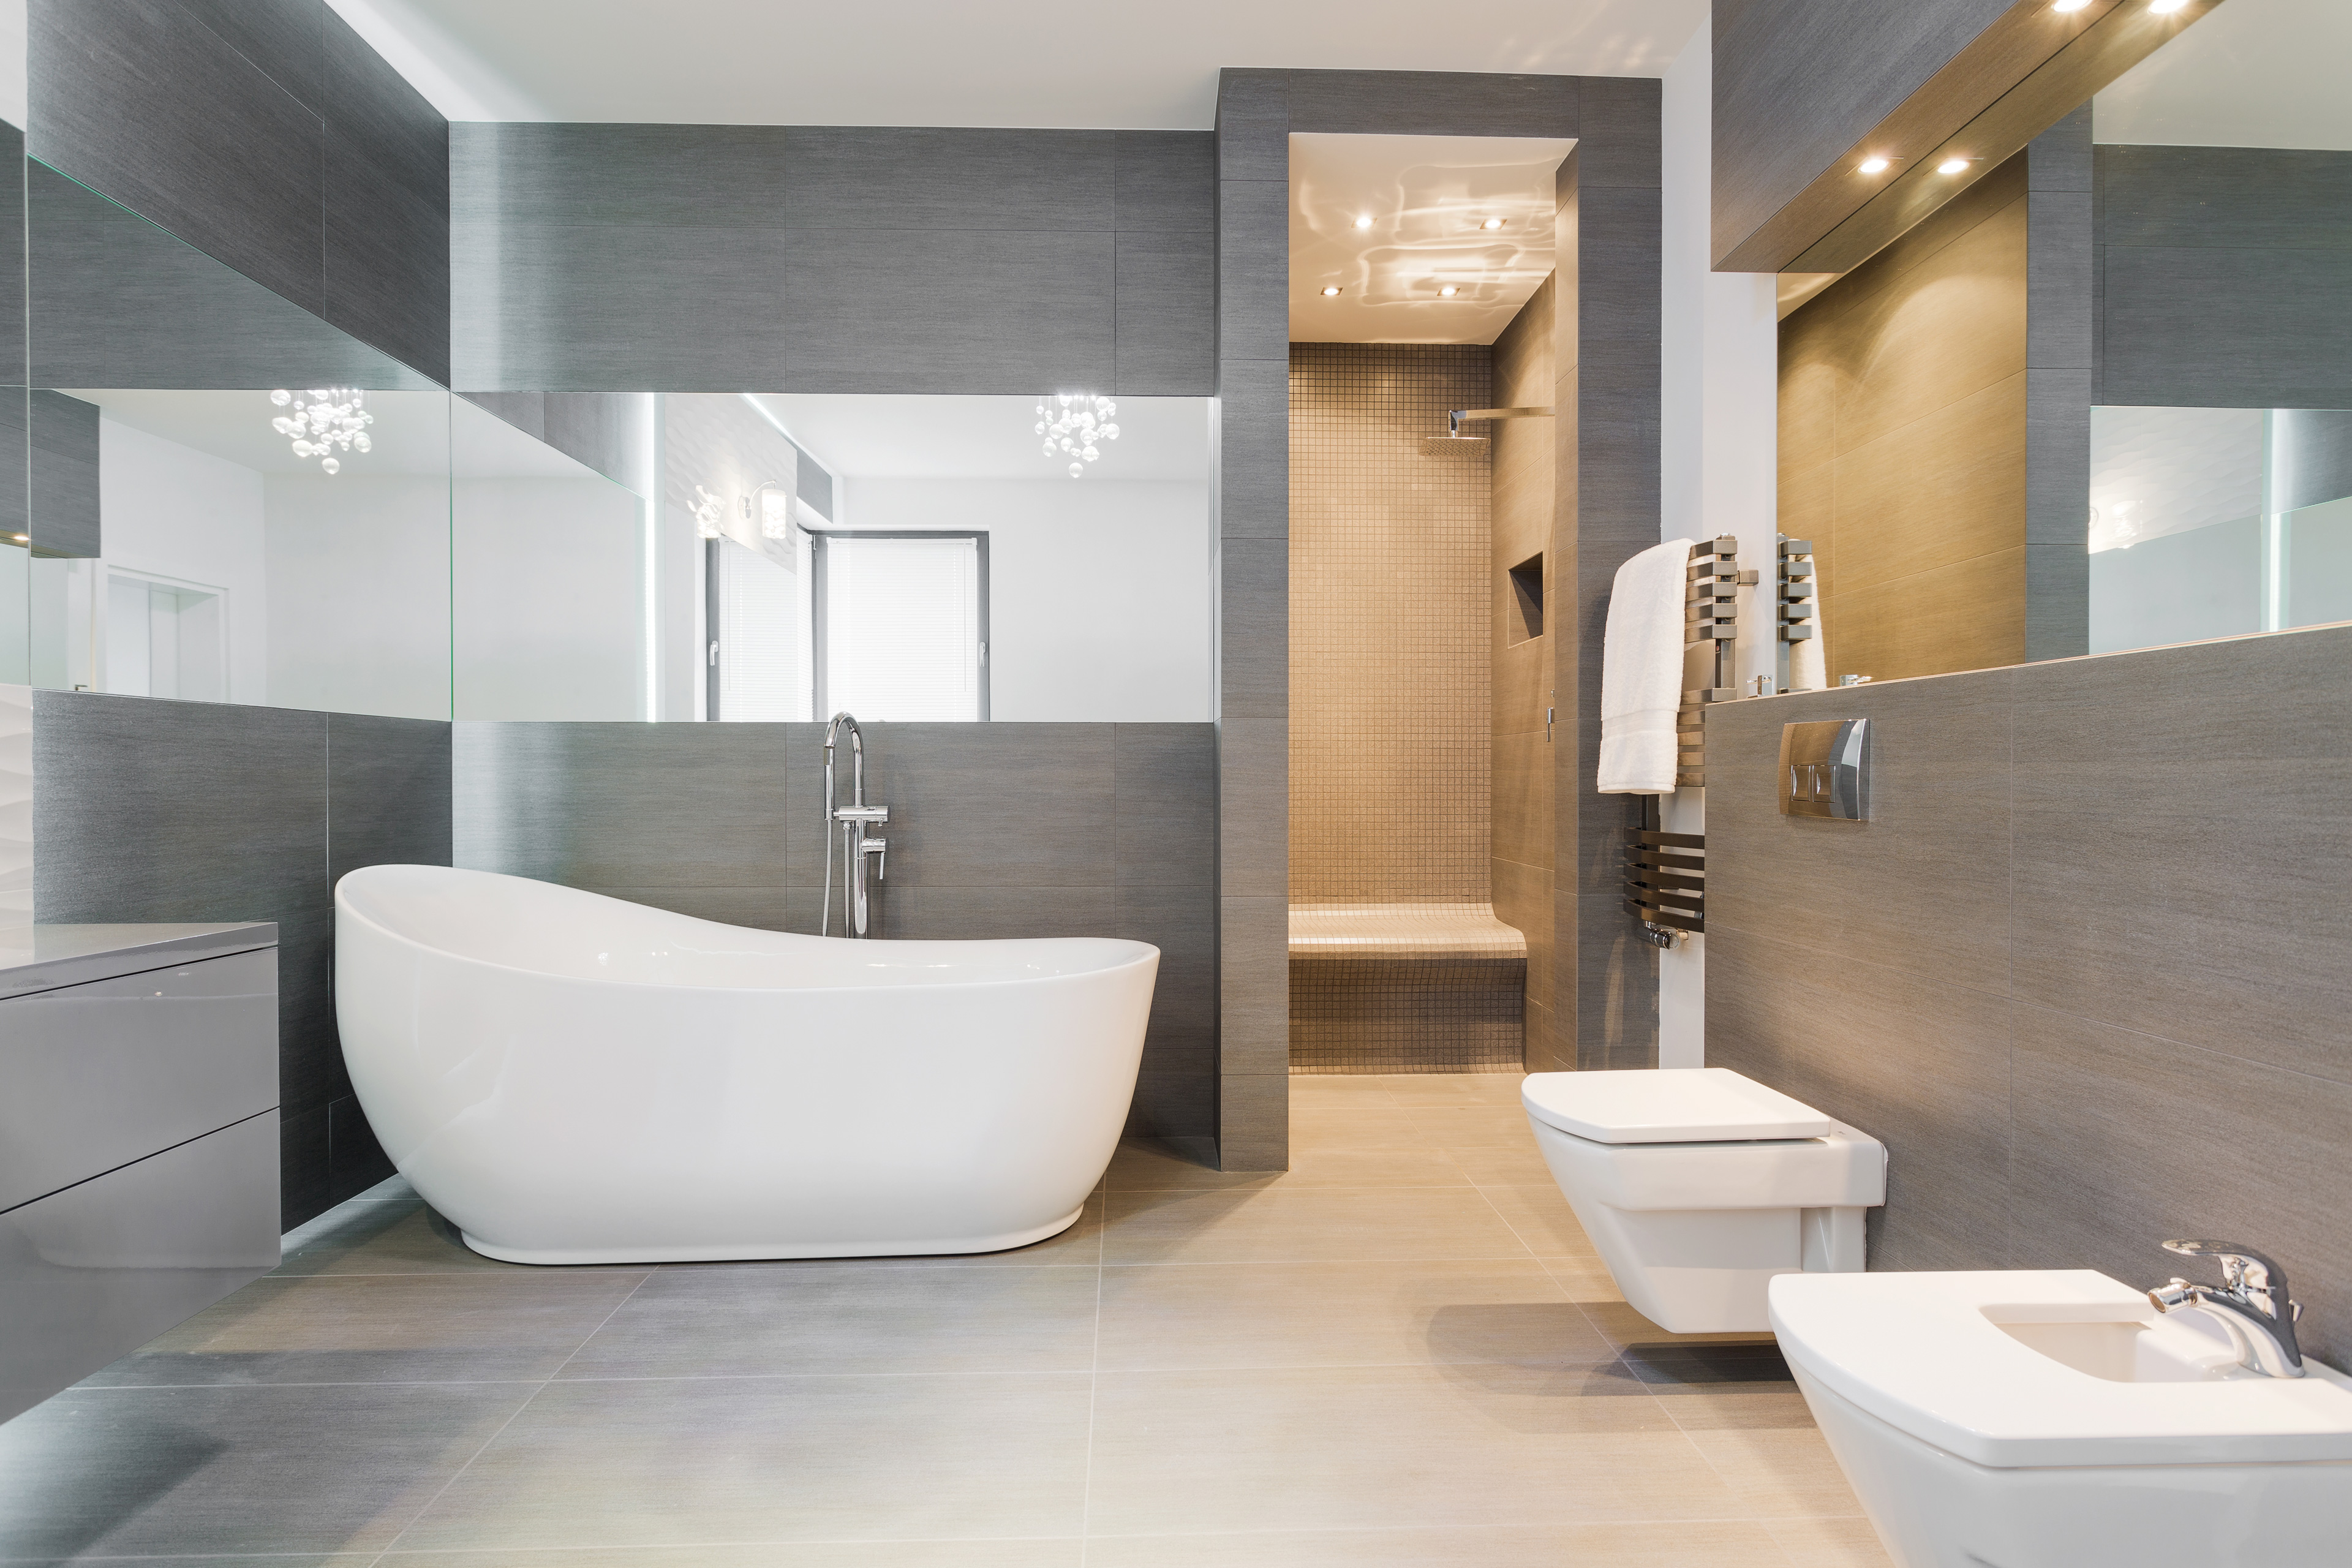 Symbolfoto: Modernes Badezimmer als Teaserfoto für den Blogbeitrag „ Badezimmer Teilsanierung  Badewanne raus, Dusche rein”